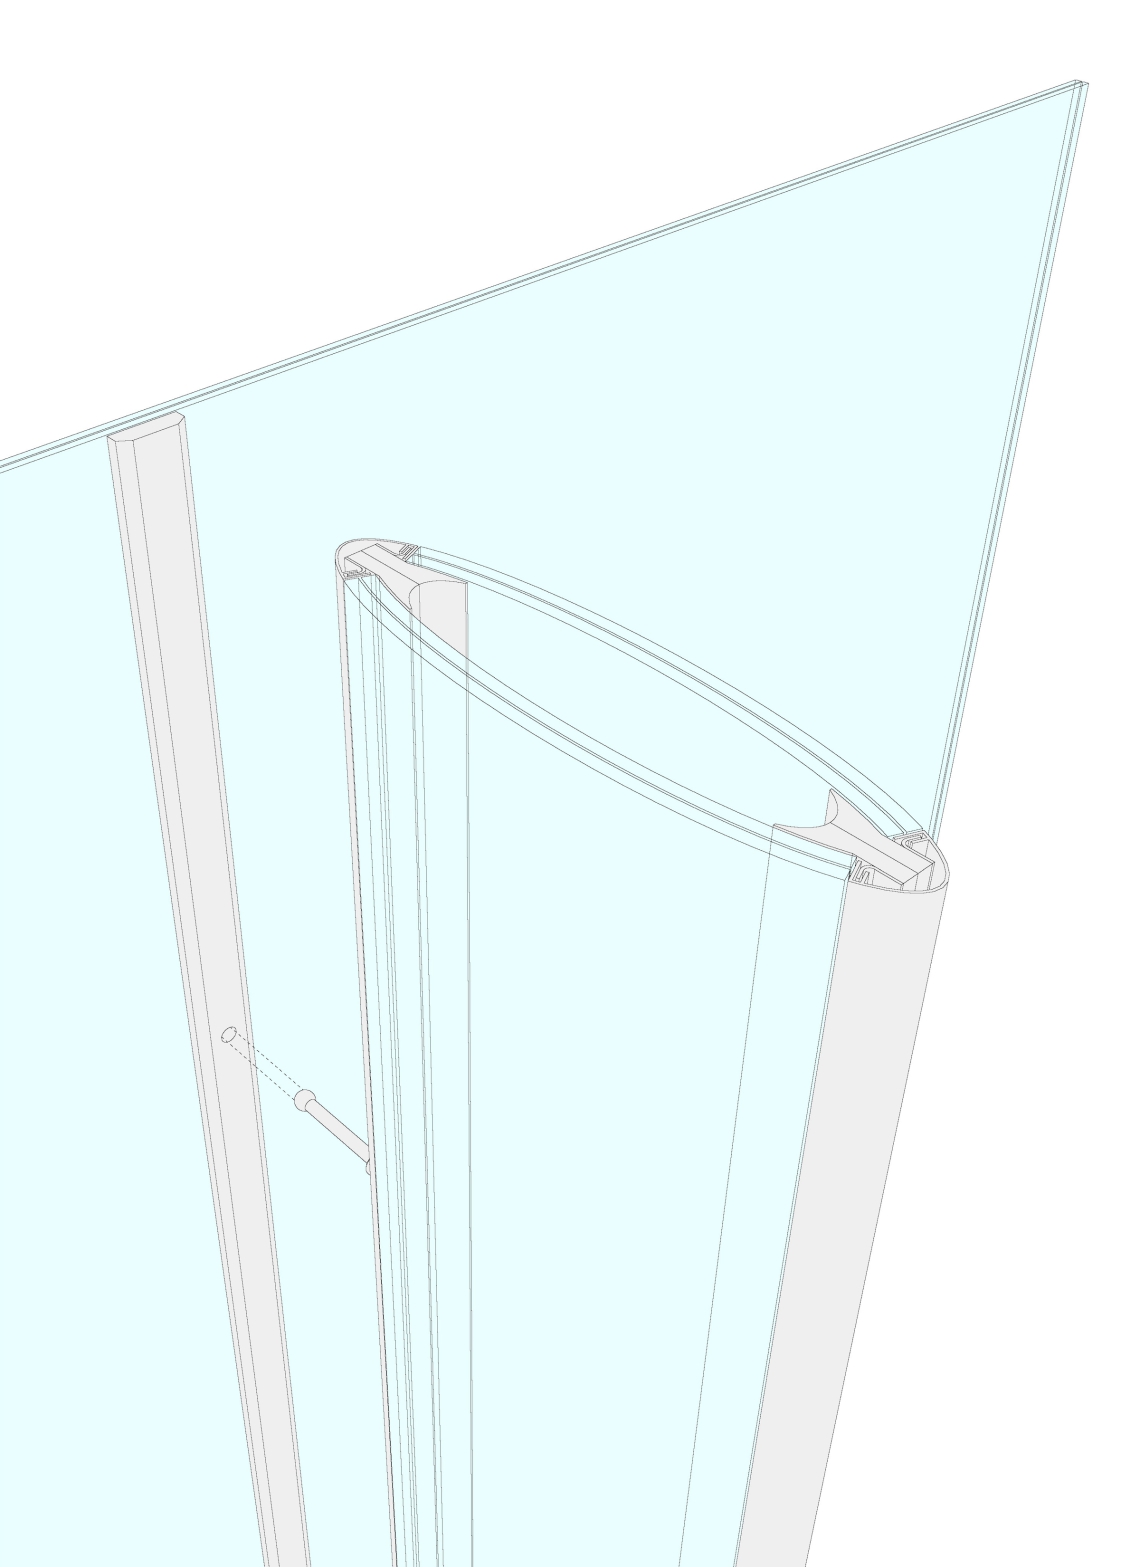 FAT-LAB-Glasfassade-seele-zeichnungen - 4 - FAT LAB | Forschung Architektur Technik